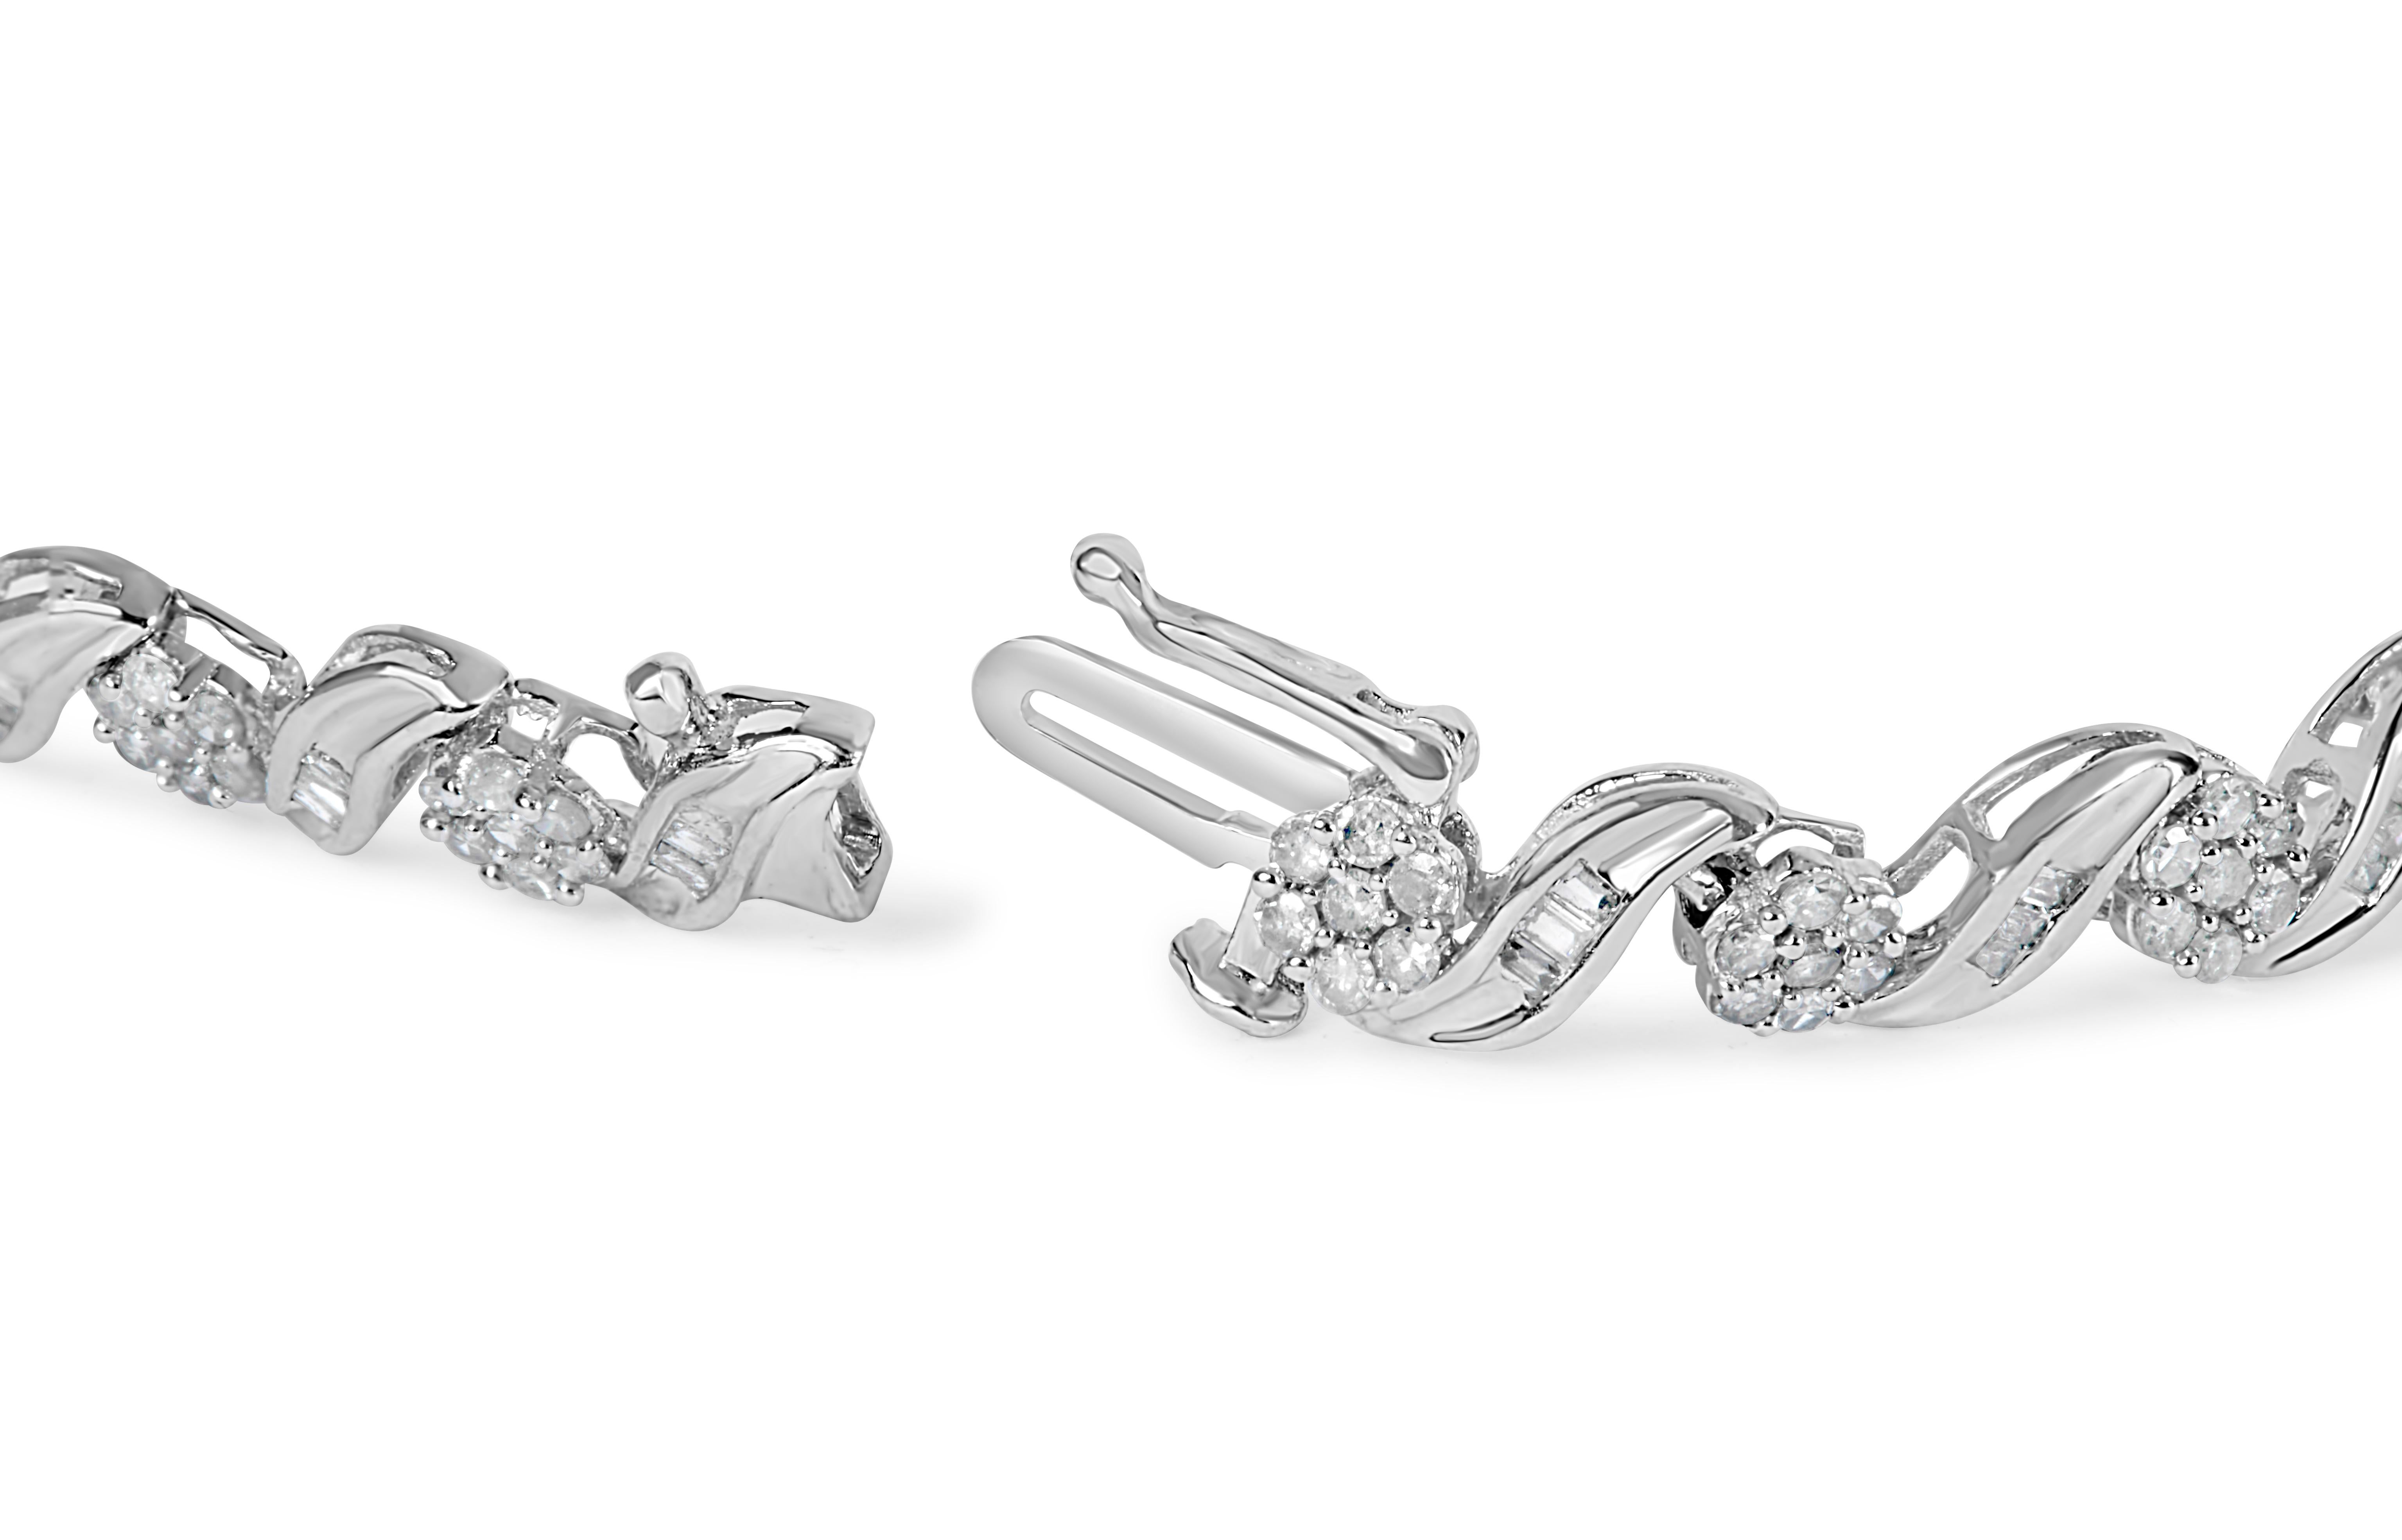 Gönnen Sie sich den bezaubernden Charme unseres exquisiten Diamond Floral S-Link Armbands. Dieses mit filigraner Präzision gefertigte Meisterwerk aus 10 Karat Weißgold besticht durch ein fesselndes Wirbeldesign, das sich anmutig um Ihr Handgelenk